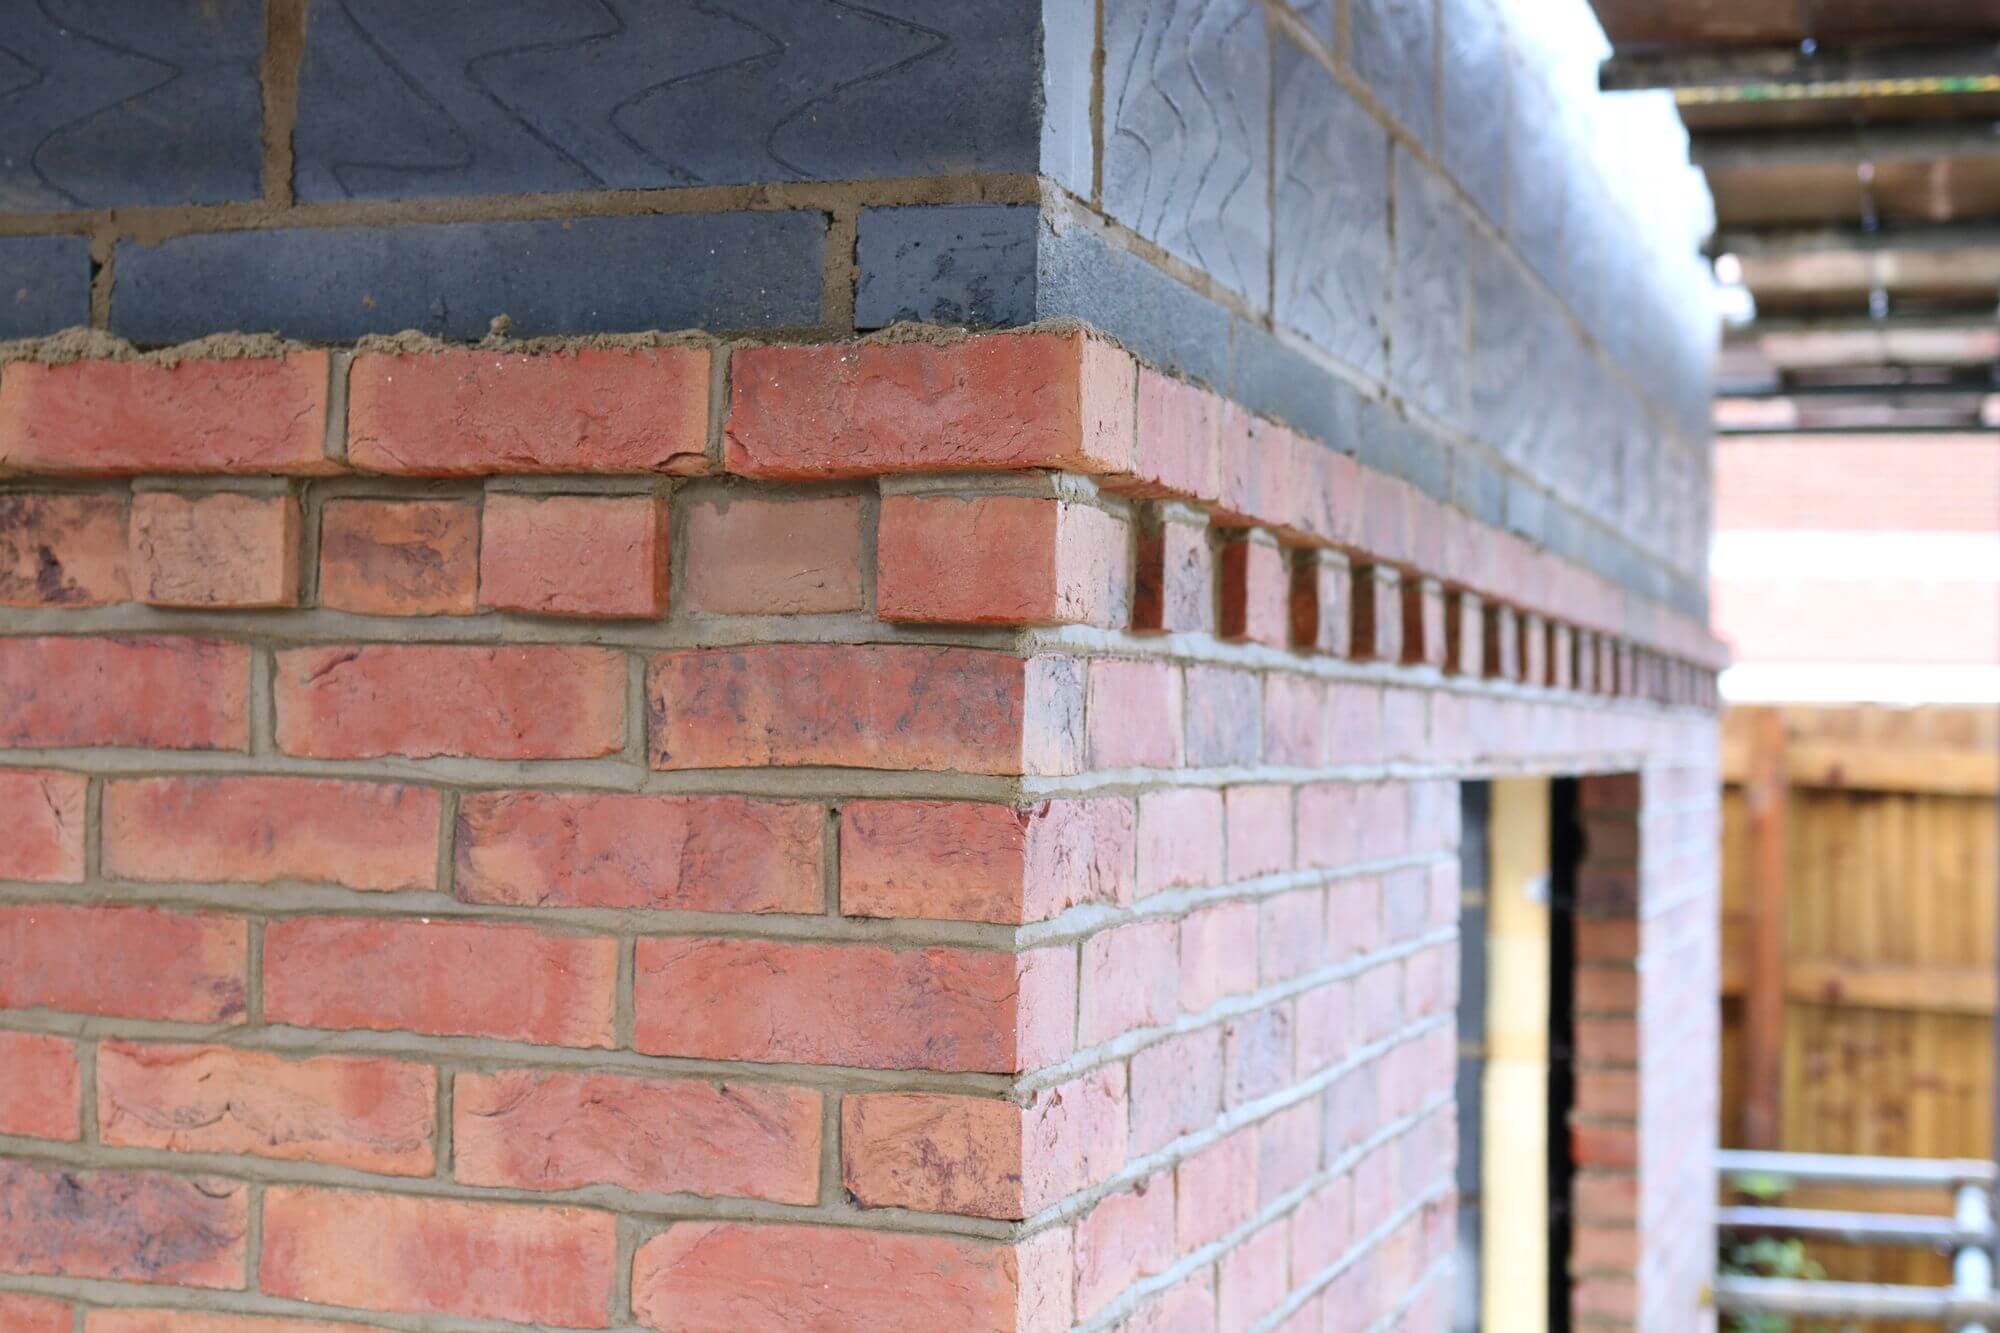 Brick wall detailing